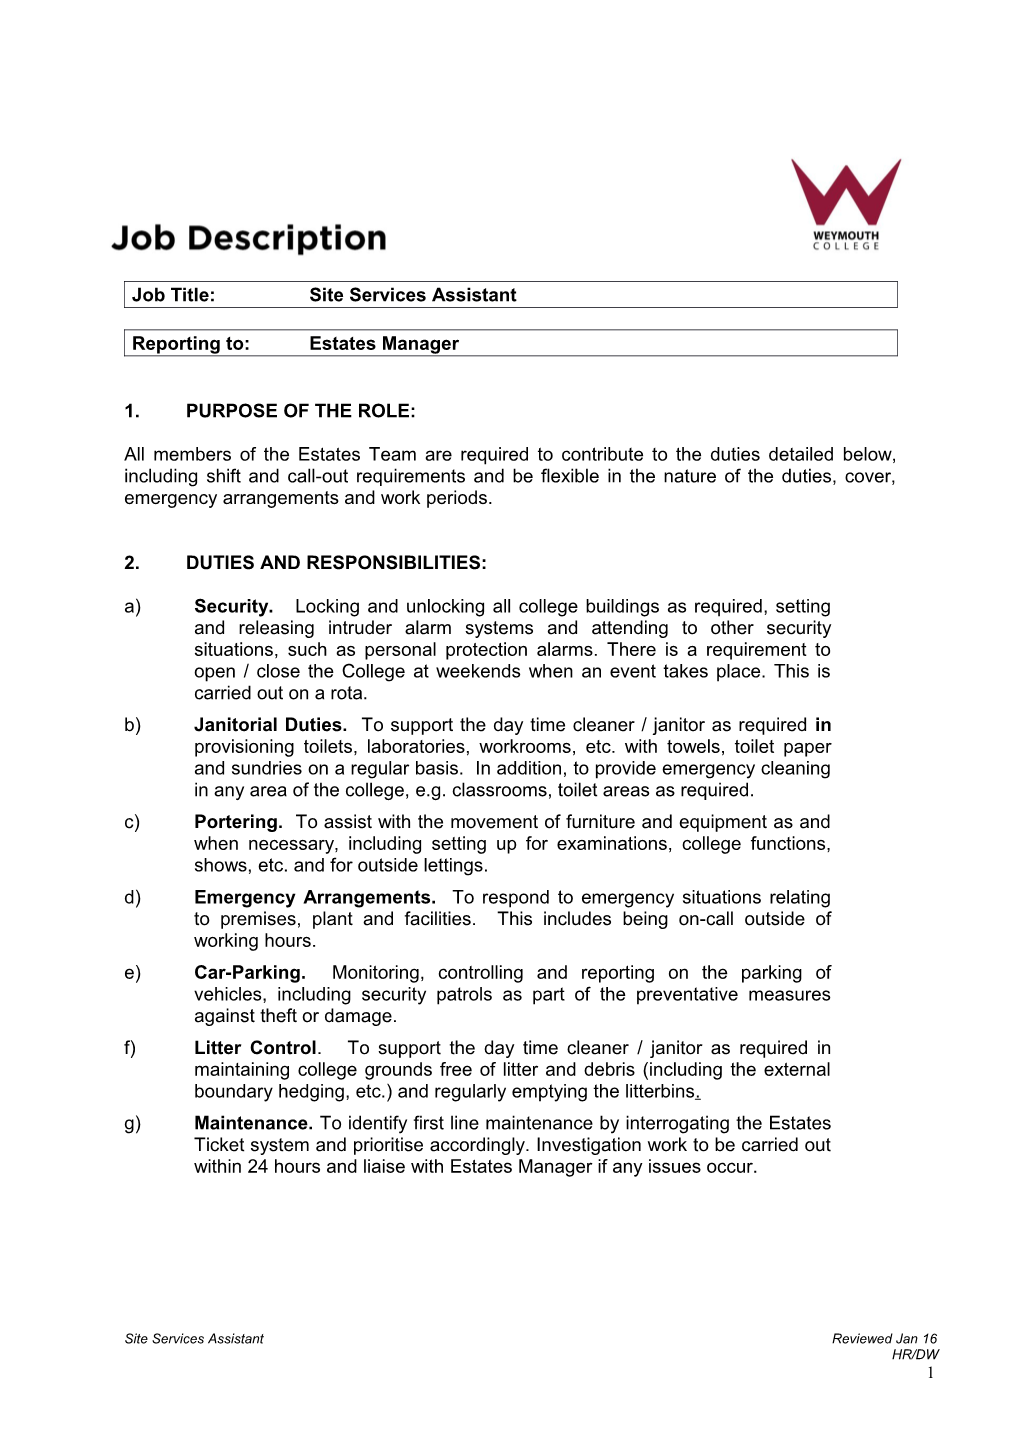 Job Title: Site Services Assistant